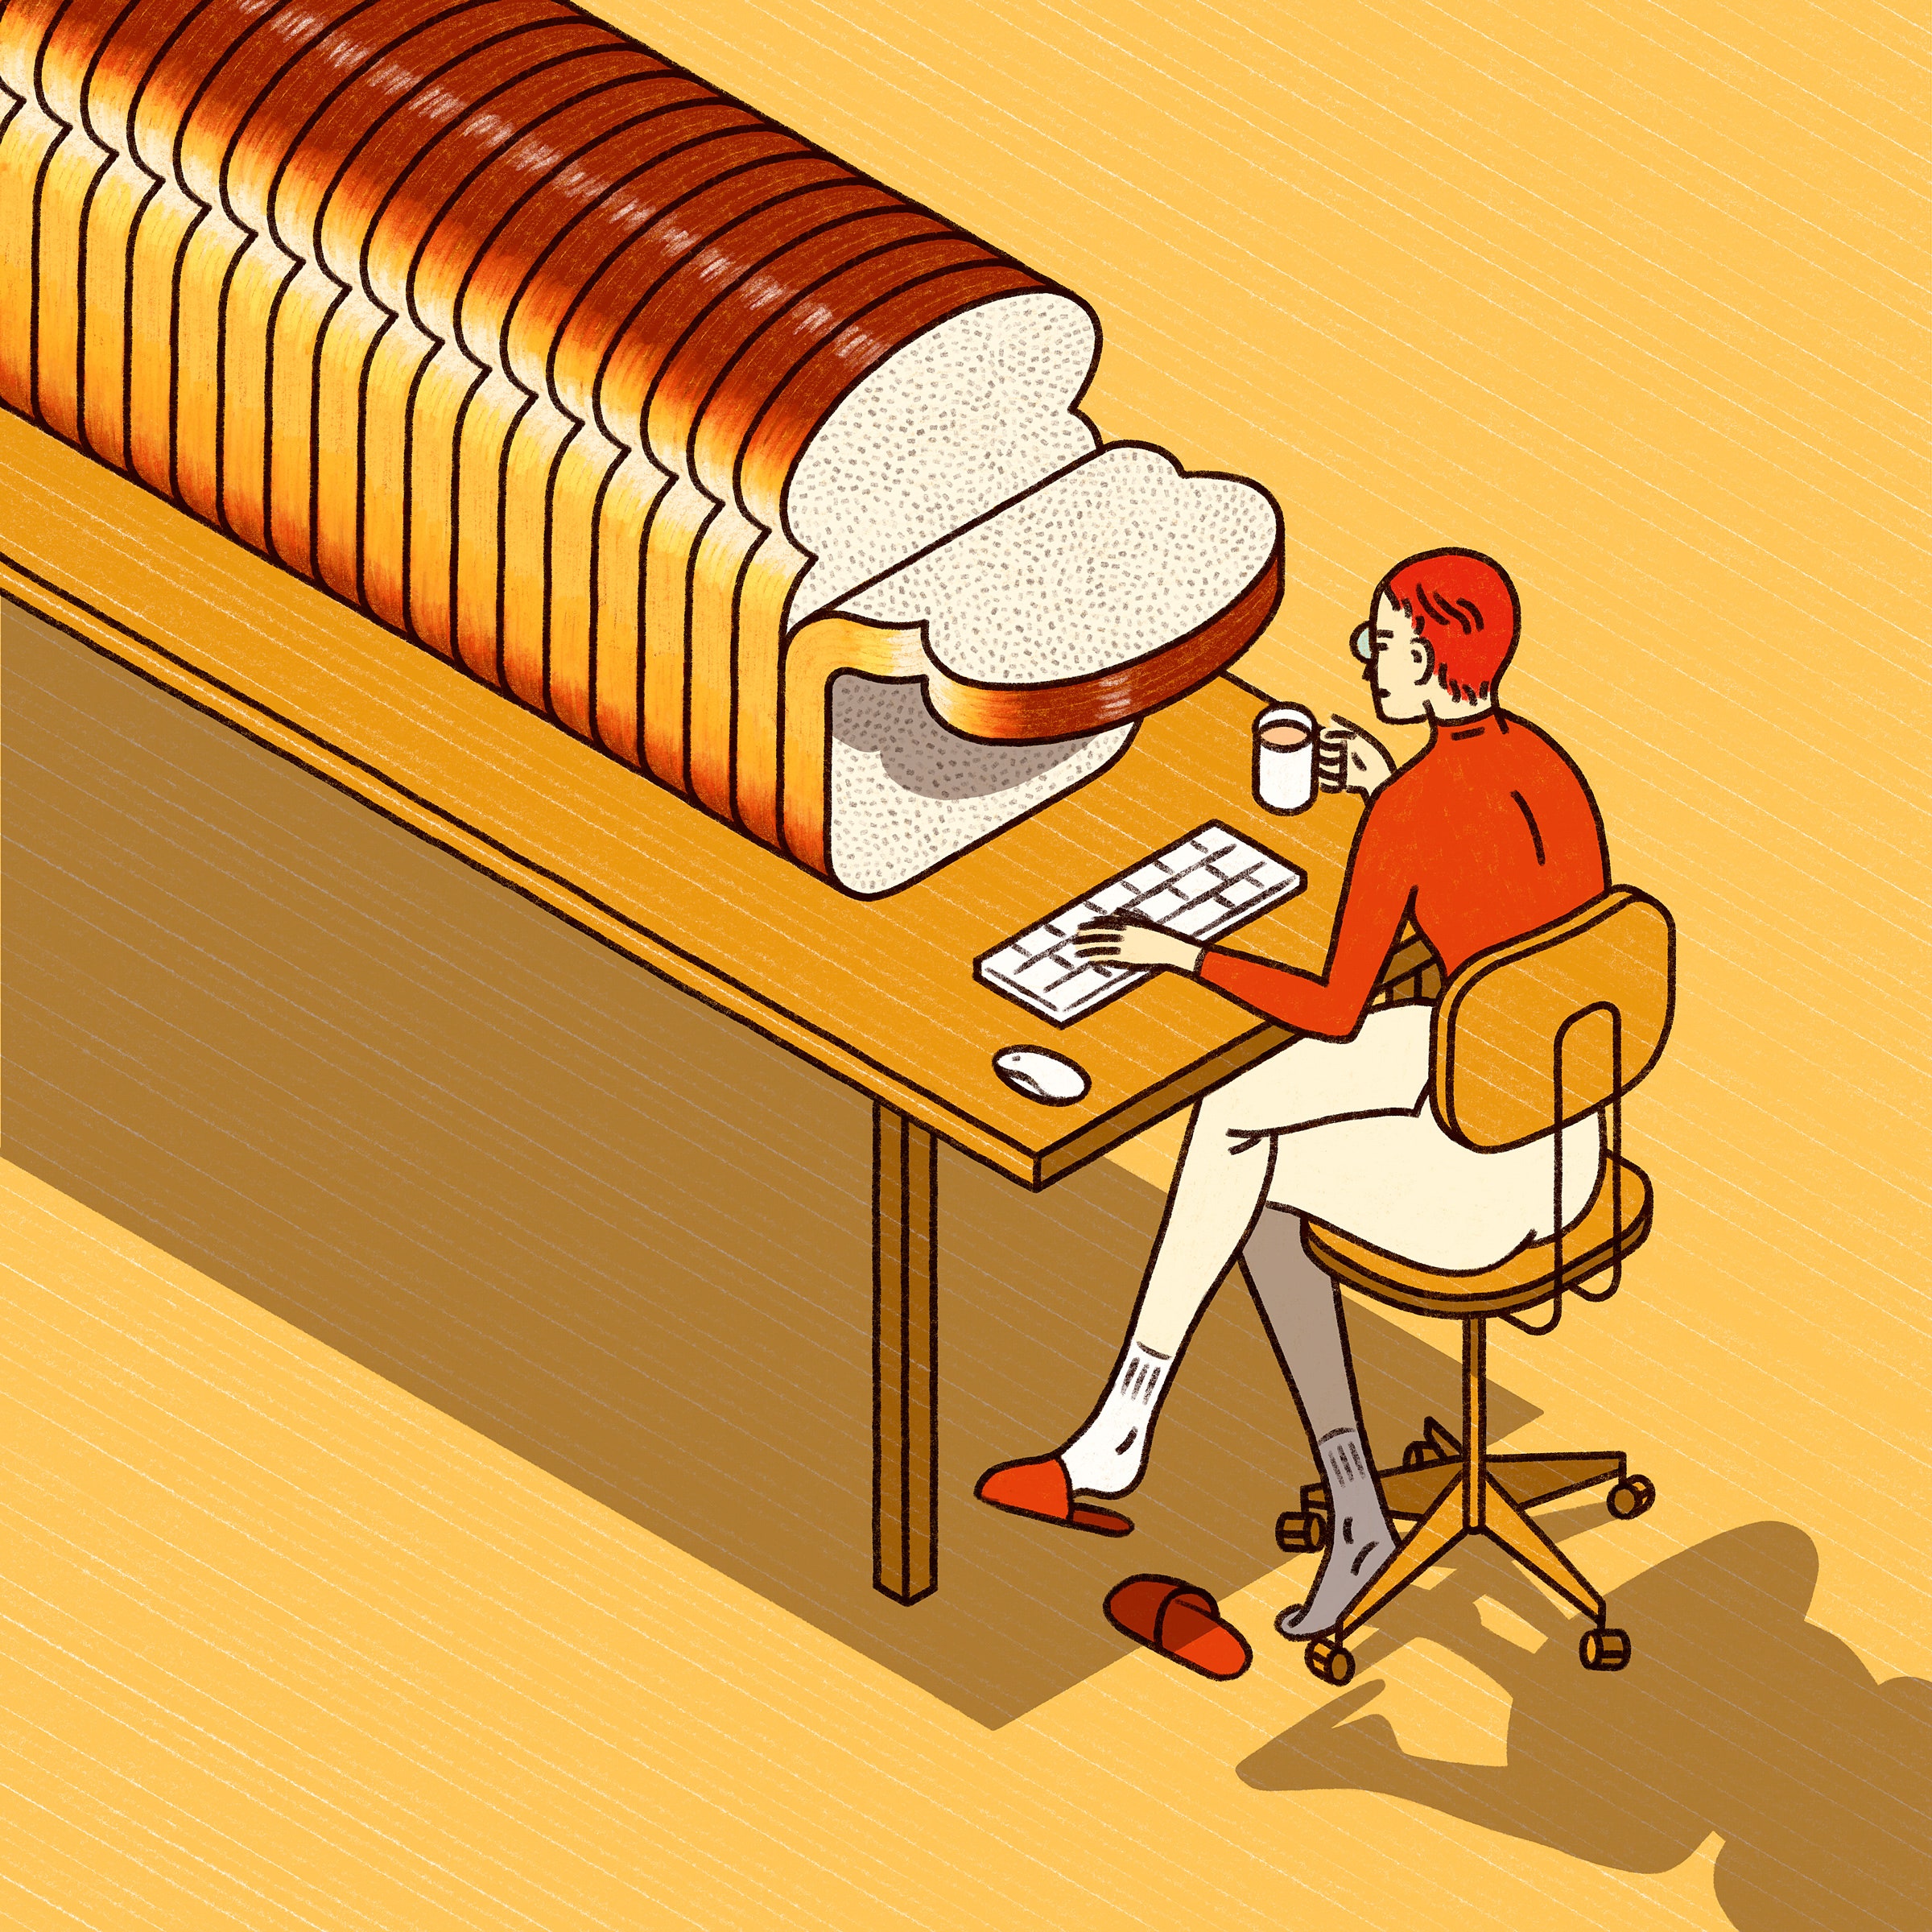 Uma ilustração de uma pessoa em uma mesa longa com um pão enorme de pão picado na parte superior da mesa.